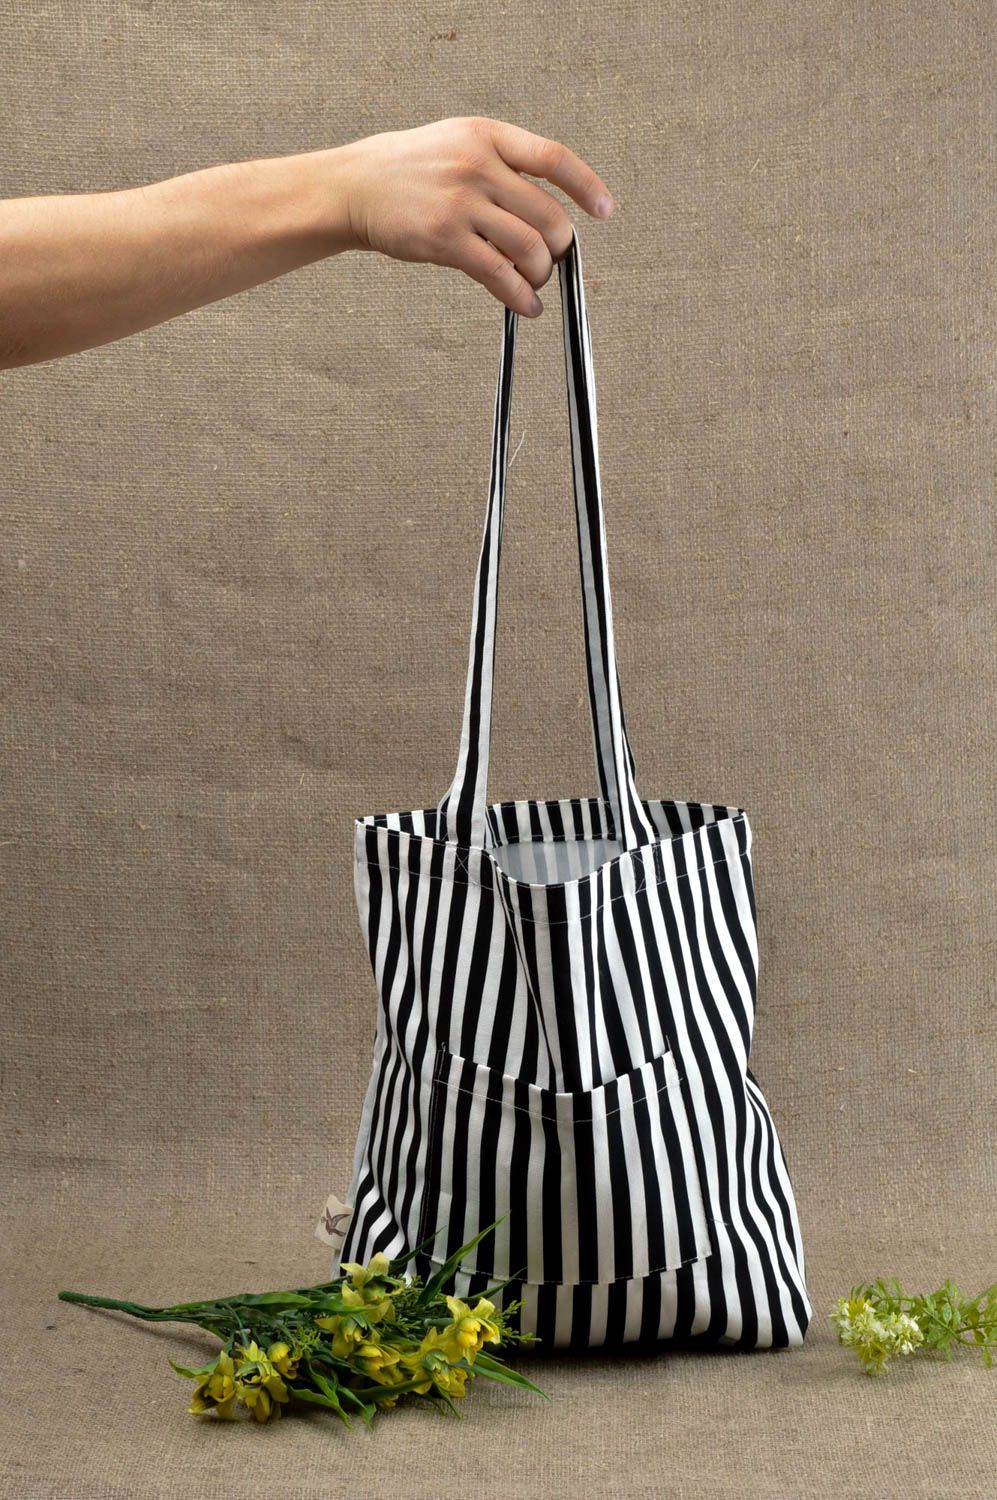 Сумка ручной работы женская сумка в полоску тканевая сумка черная с белым фото 1